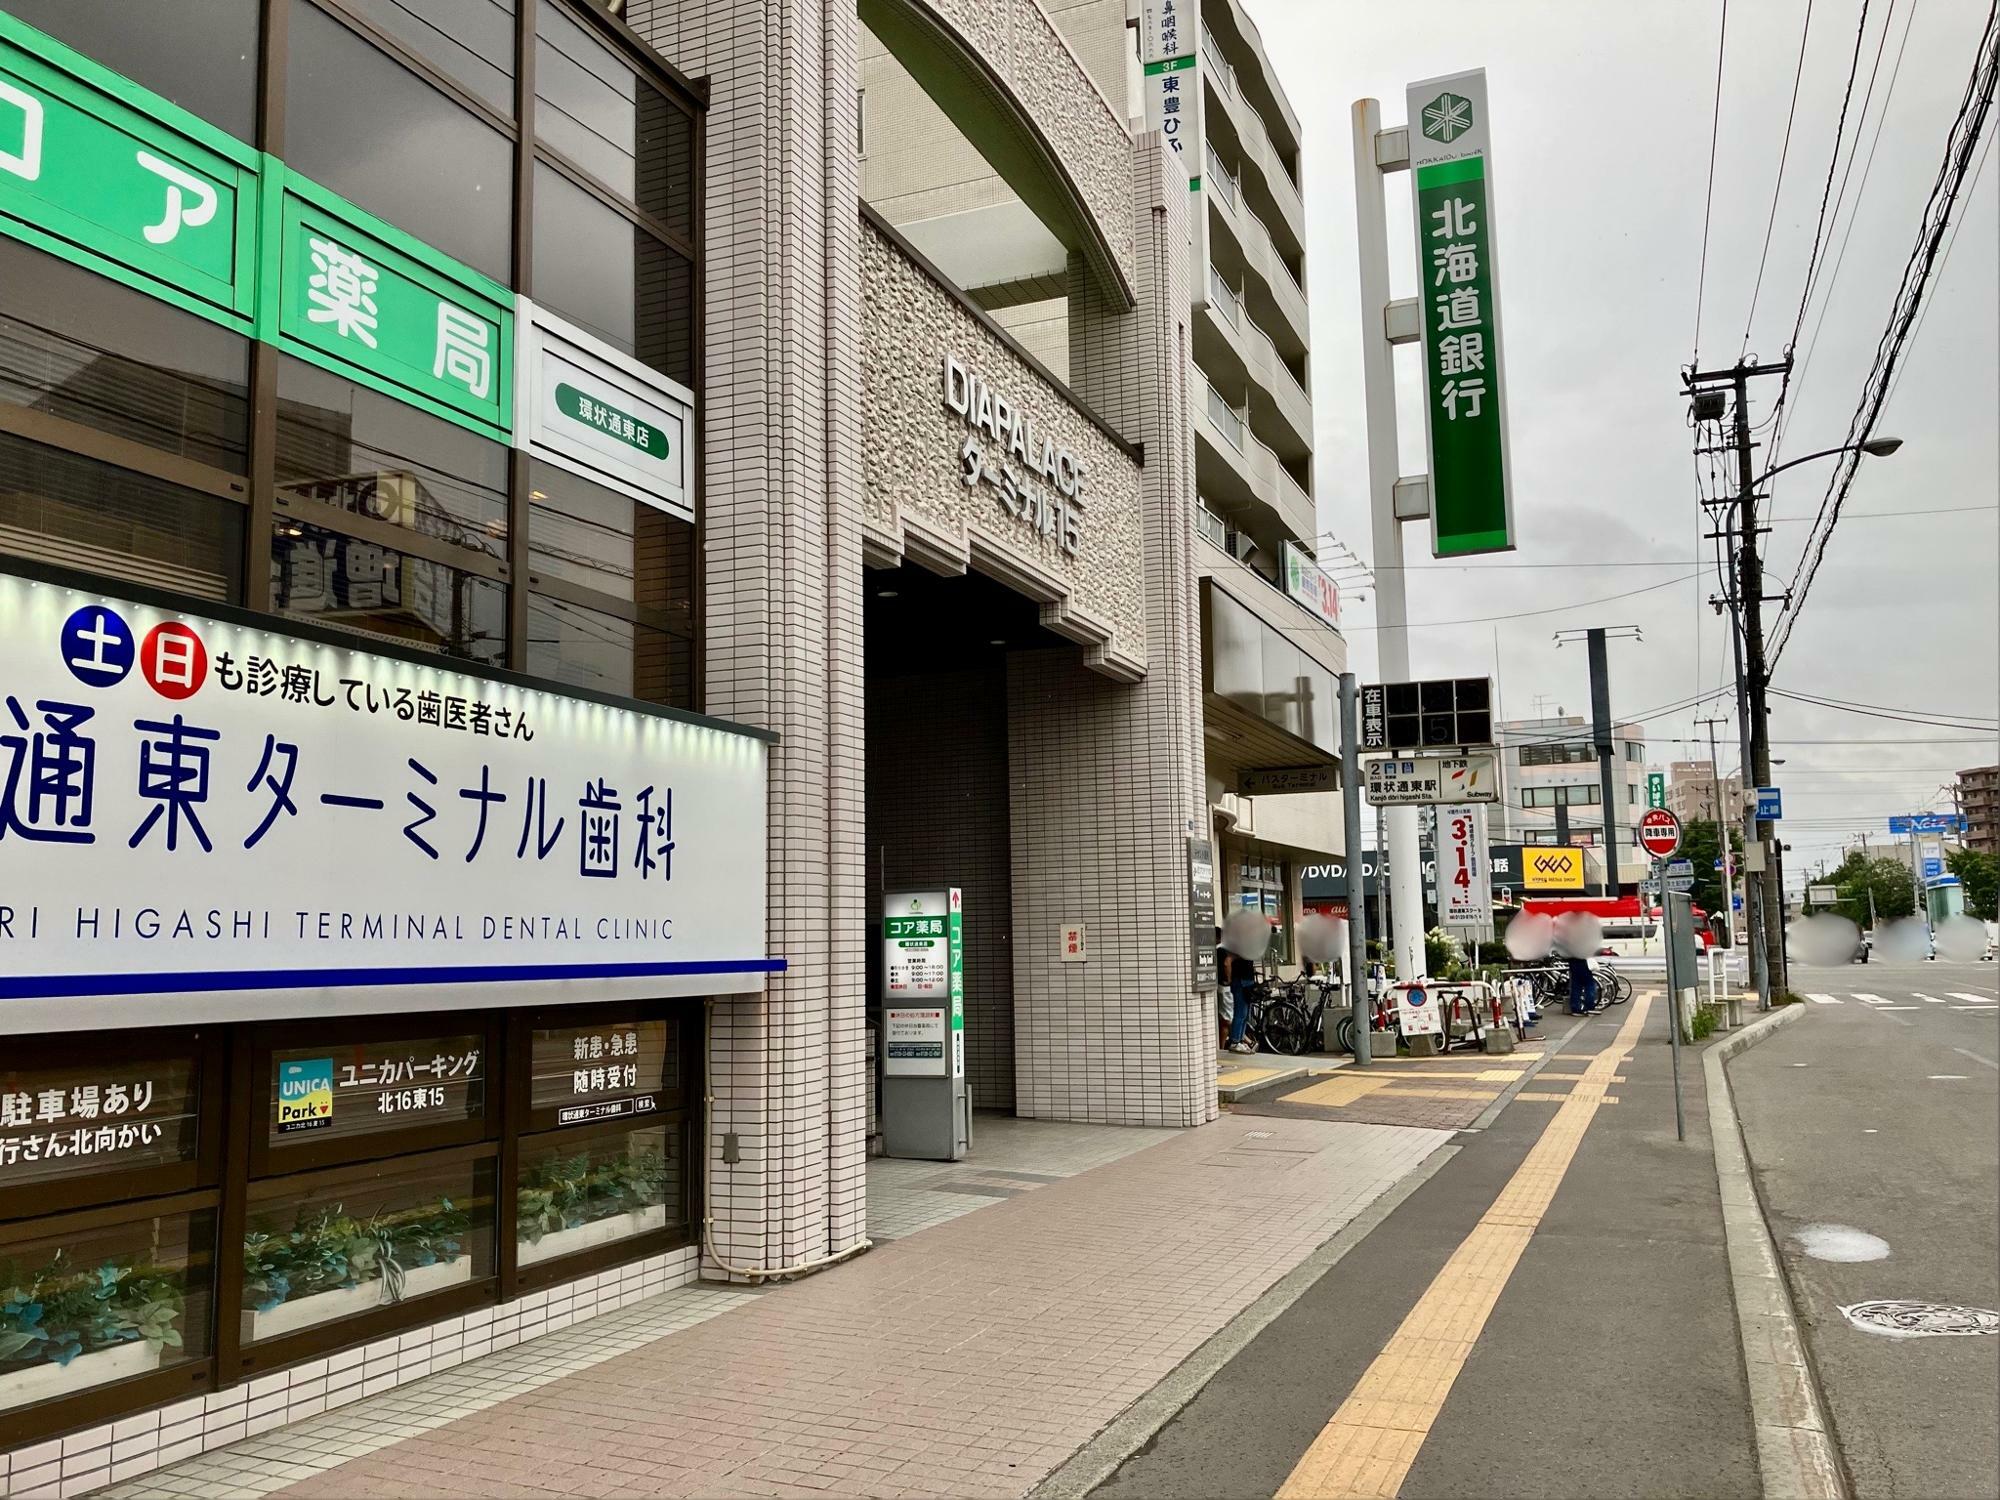 札幌地下鉄東豊線「環状通東」駅前